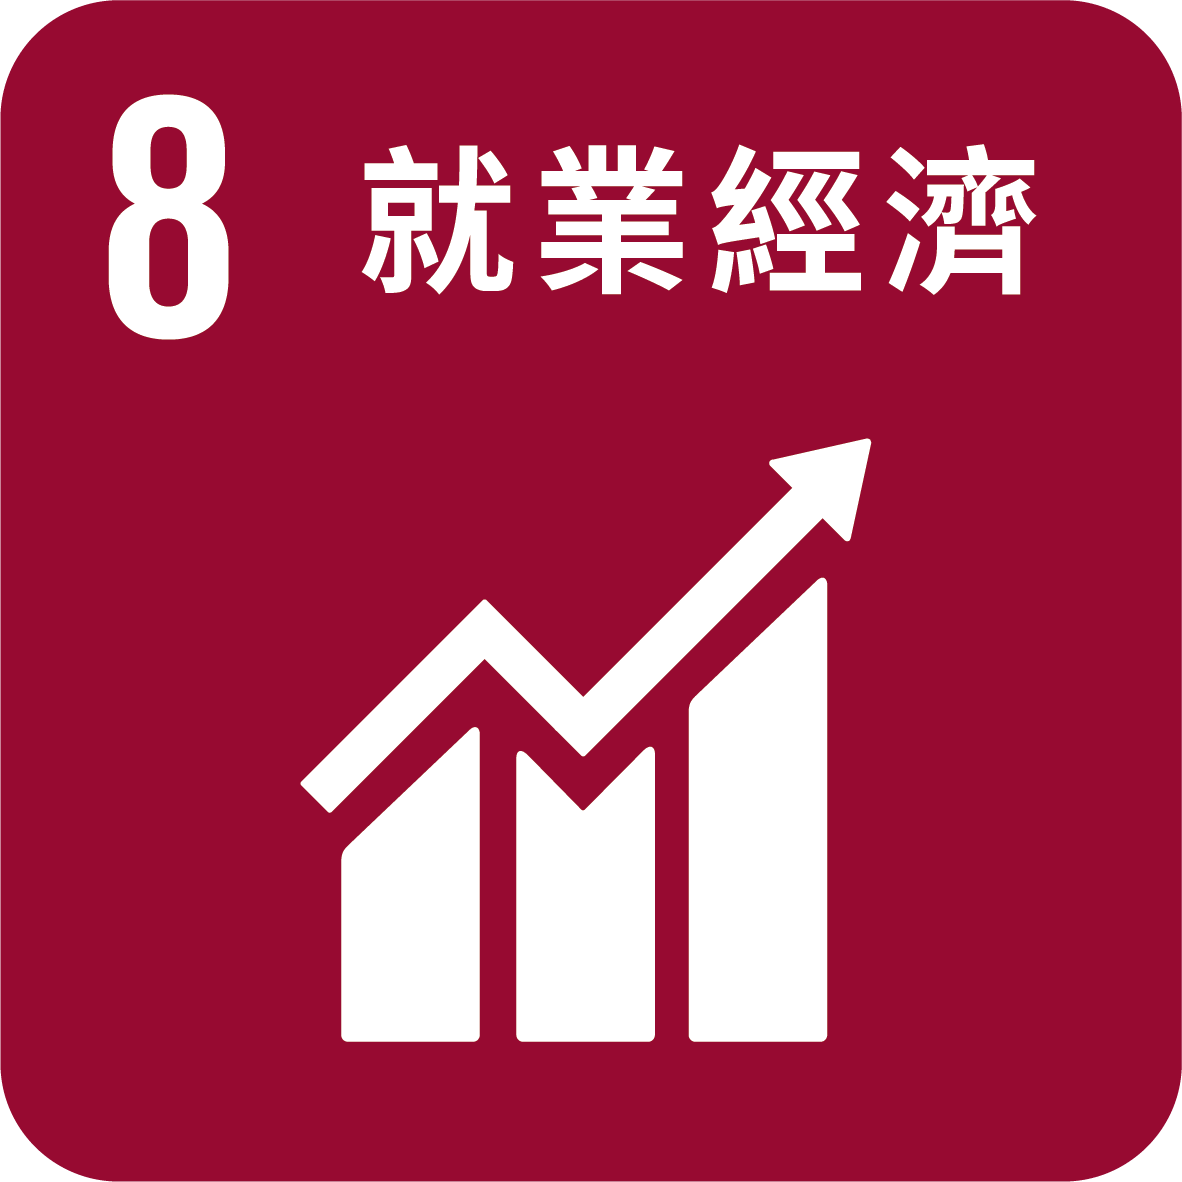 目標8_促進持久 包容和永續經濟增長 促進充分的生產性就業和人人獲得適當工作